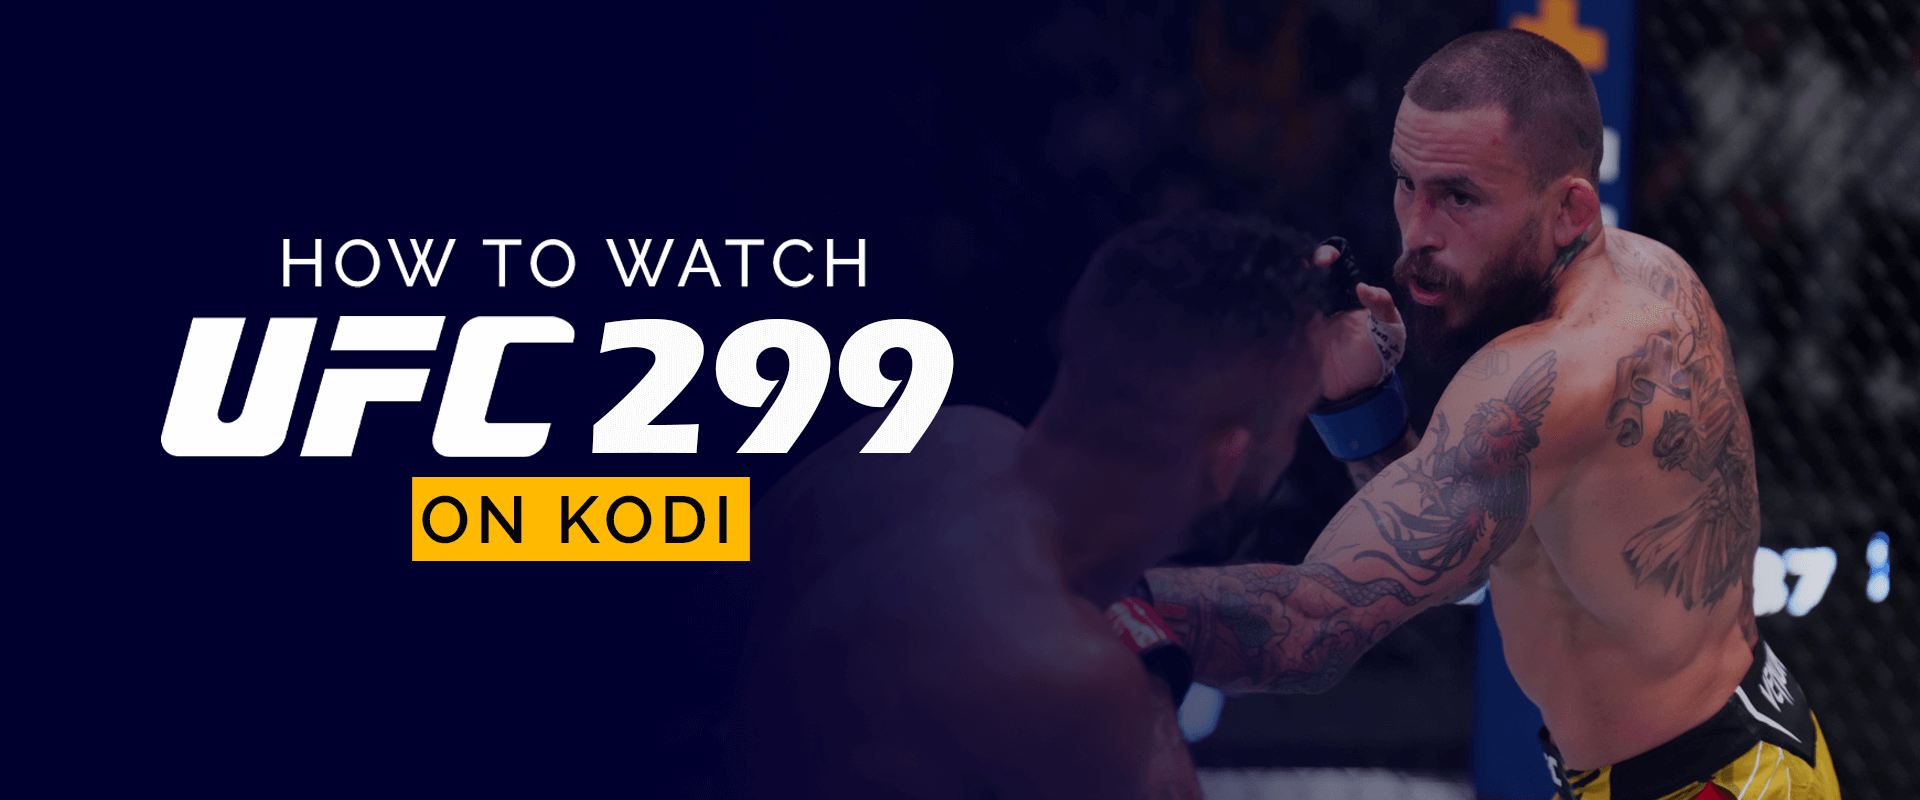 How to Watch UFC 299 on Kodi